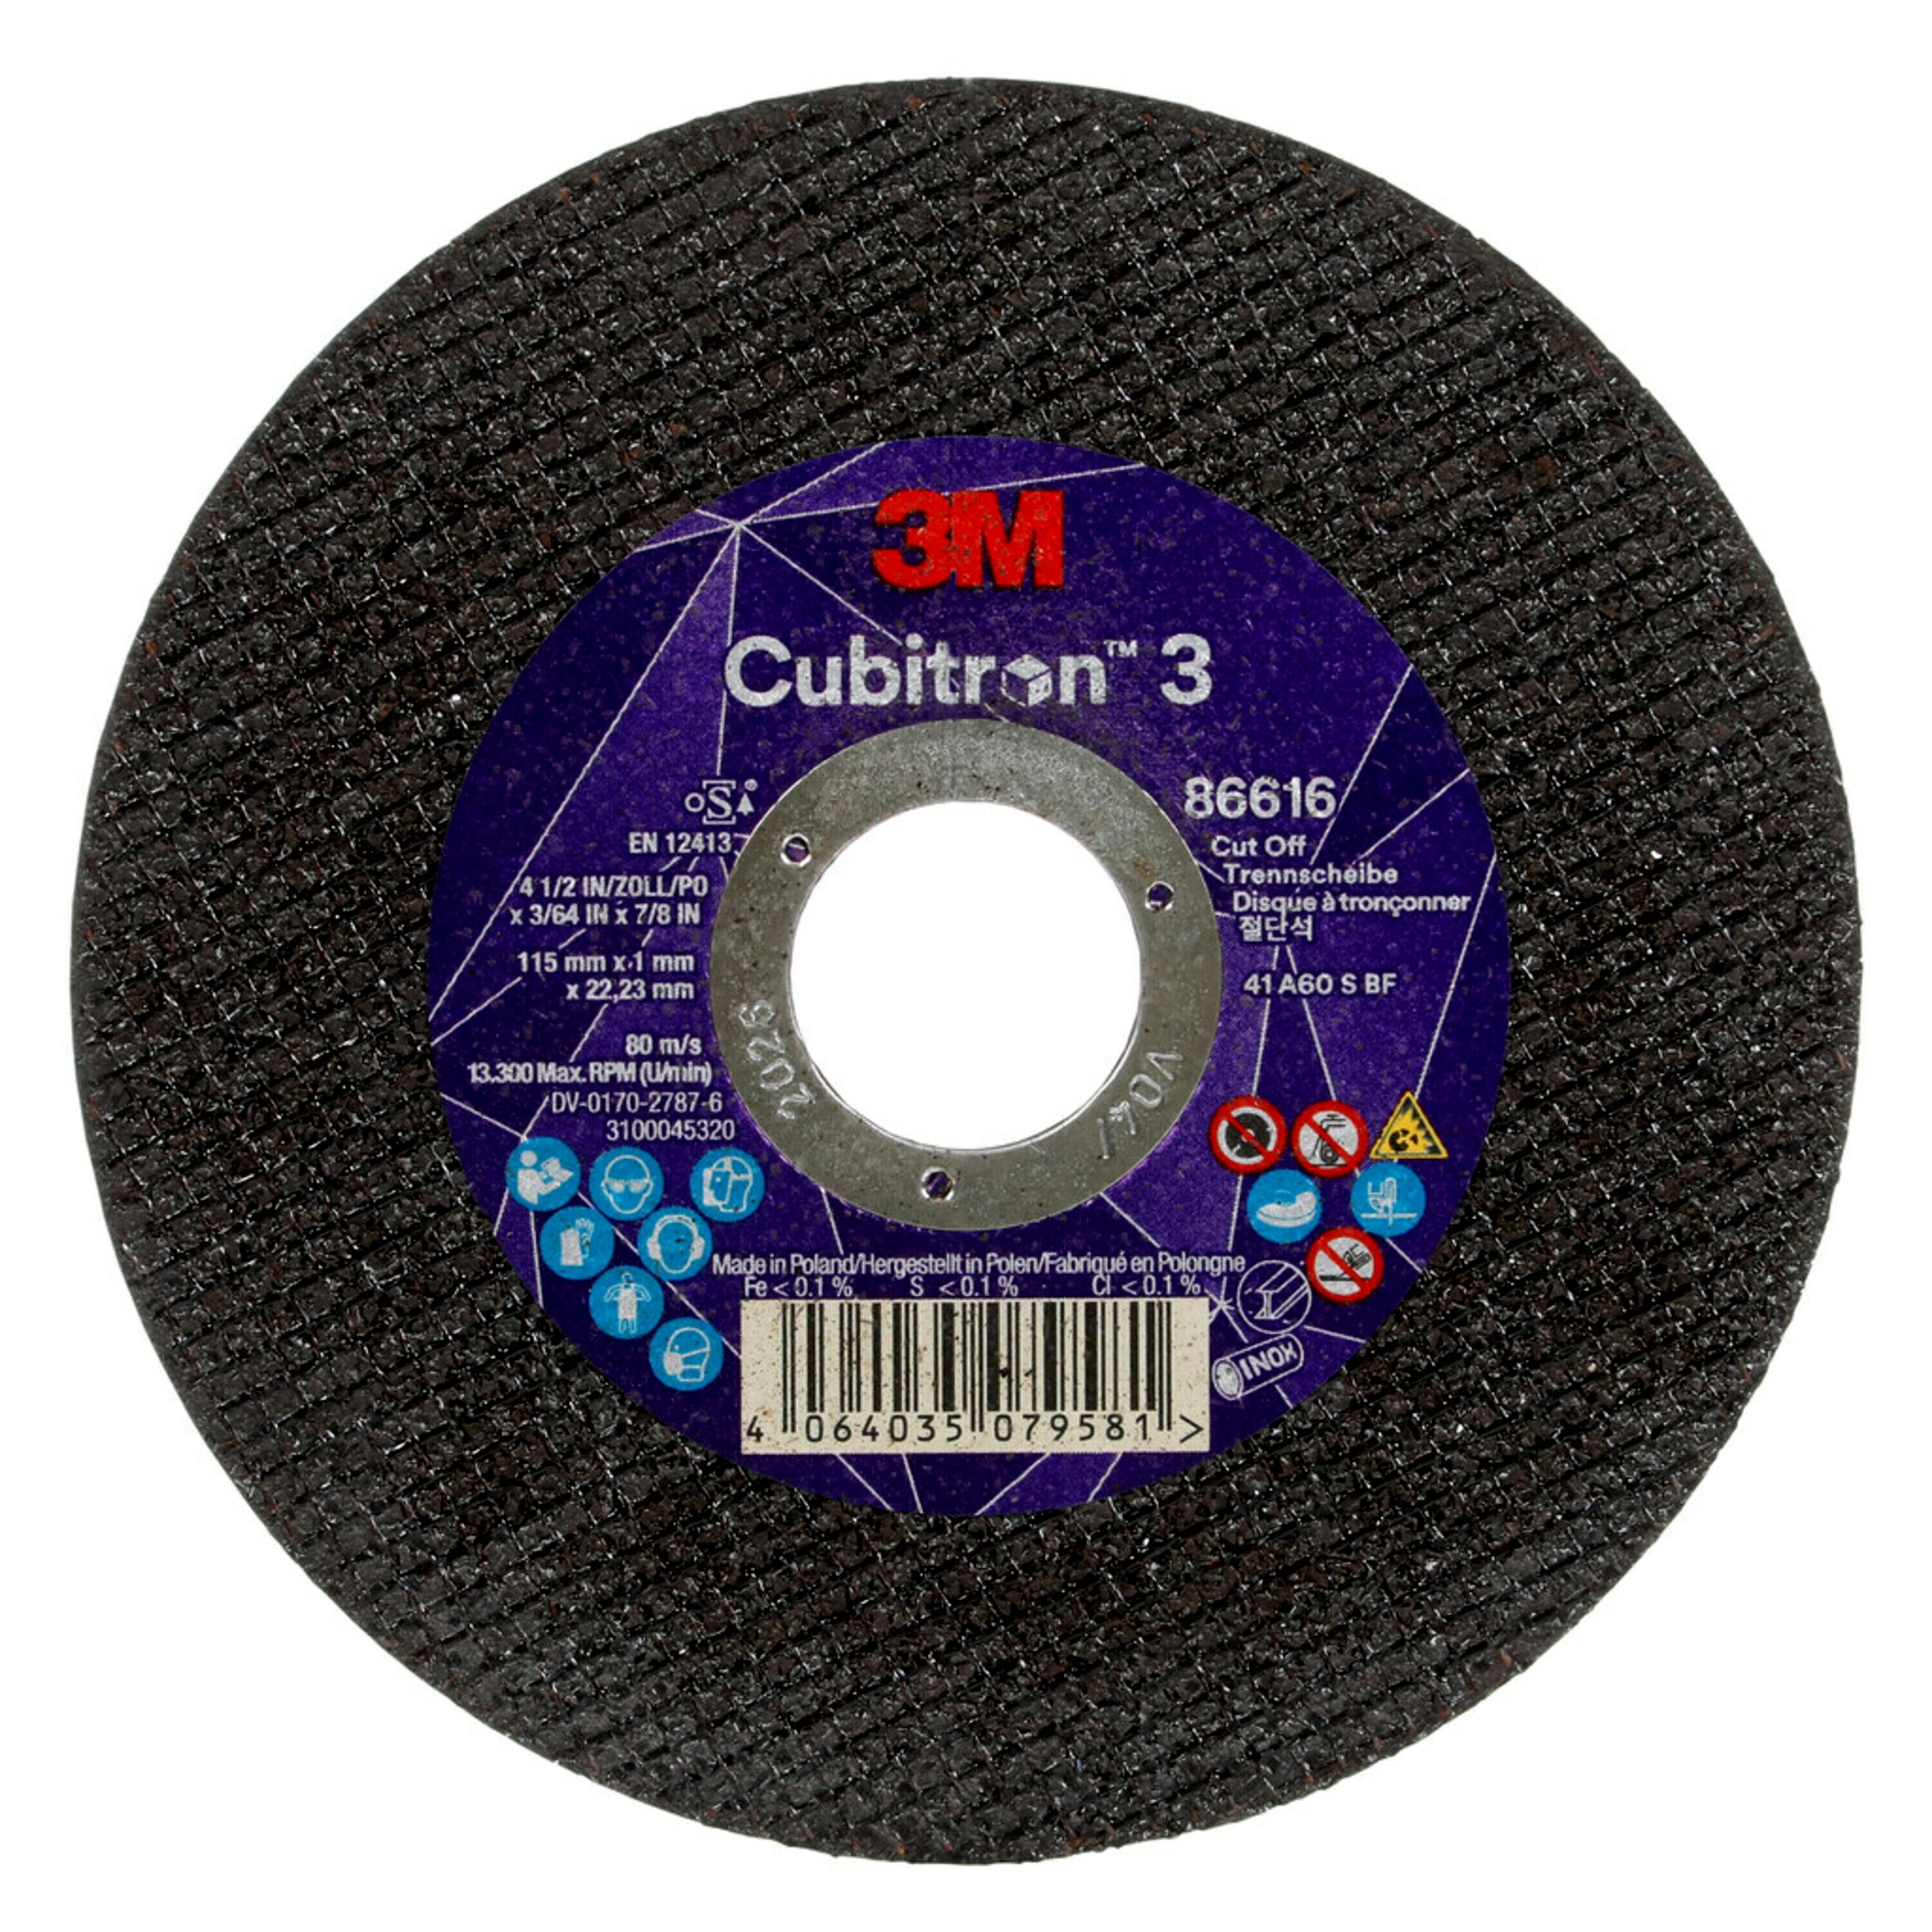 3M Cubitron 3 disco da taglio, 115 mm, 1 mm, 22,23 mm, 60 , tipo 41 #86616